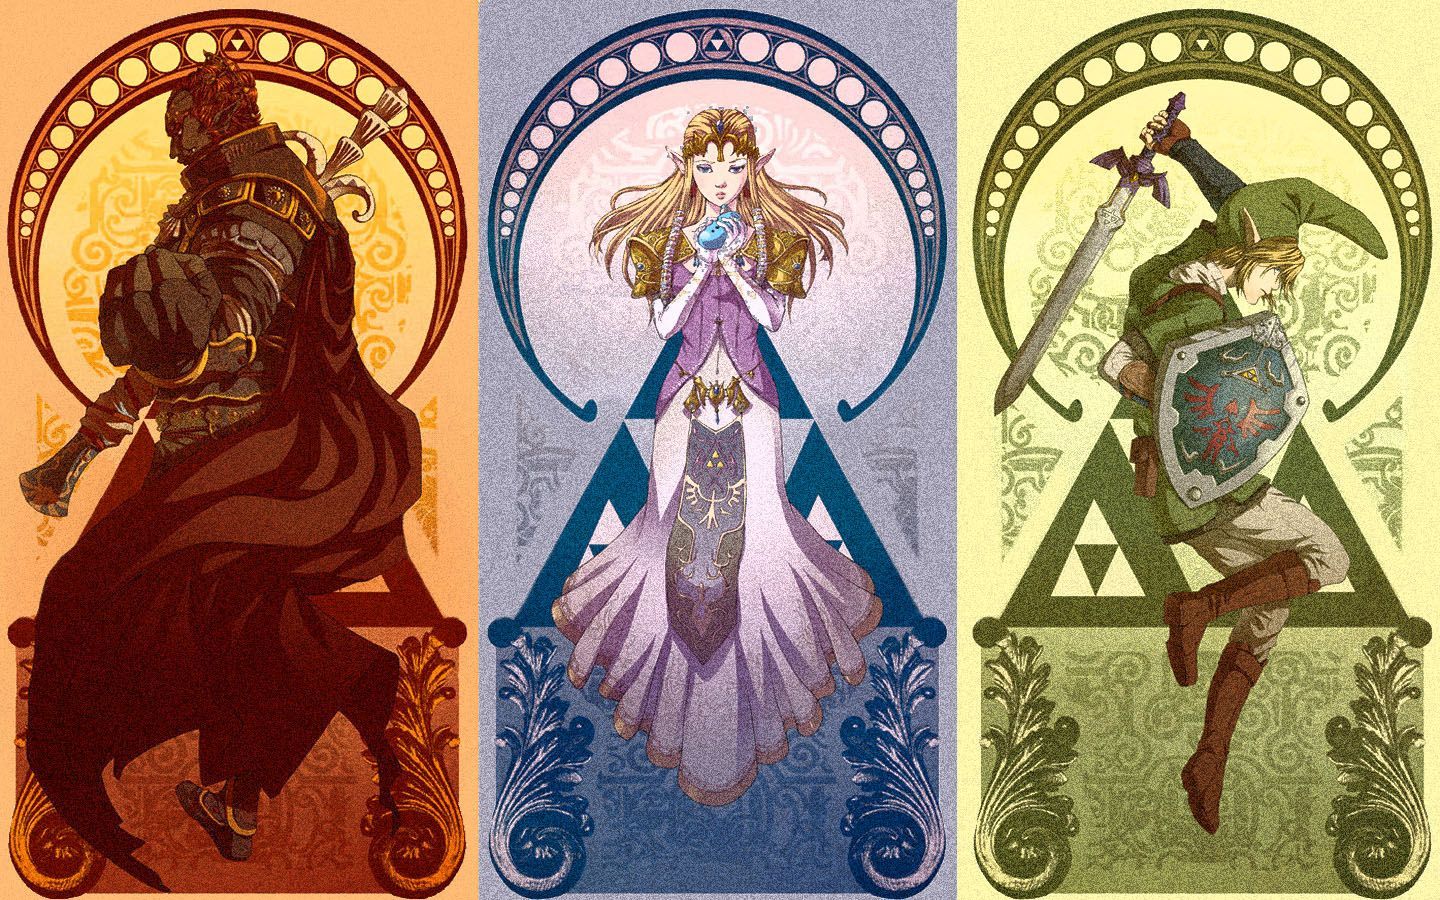 Zelda Wallpaper | 1440x900 | ID:51495